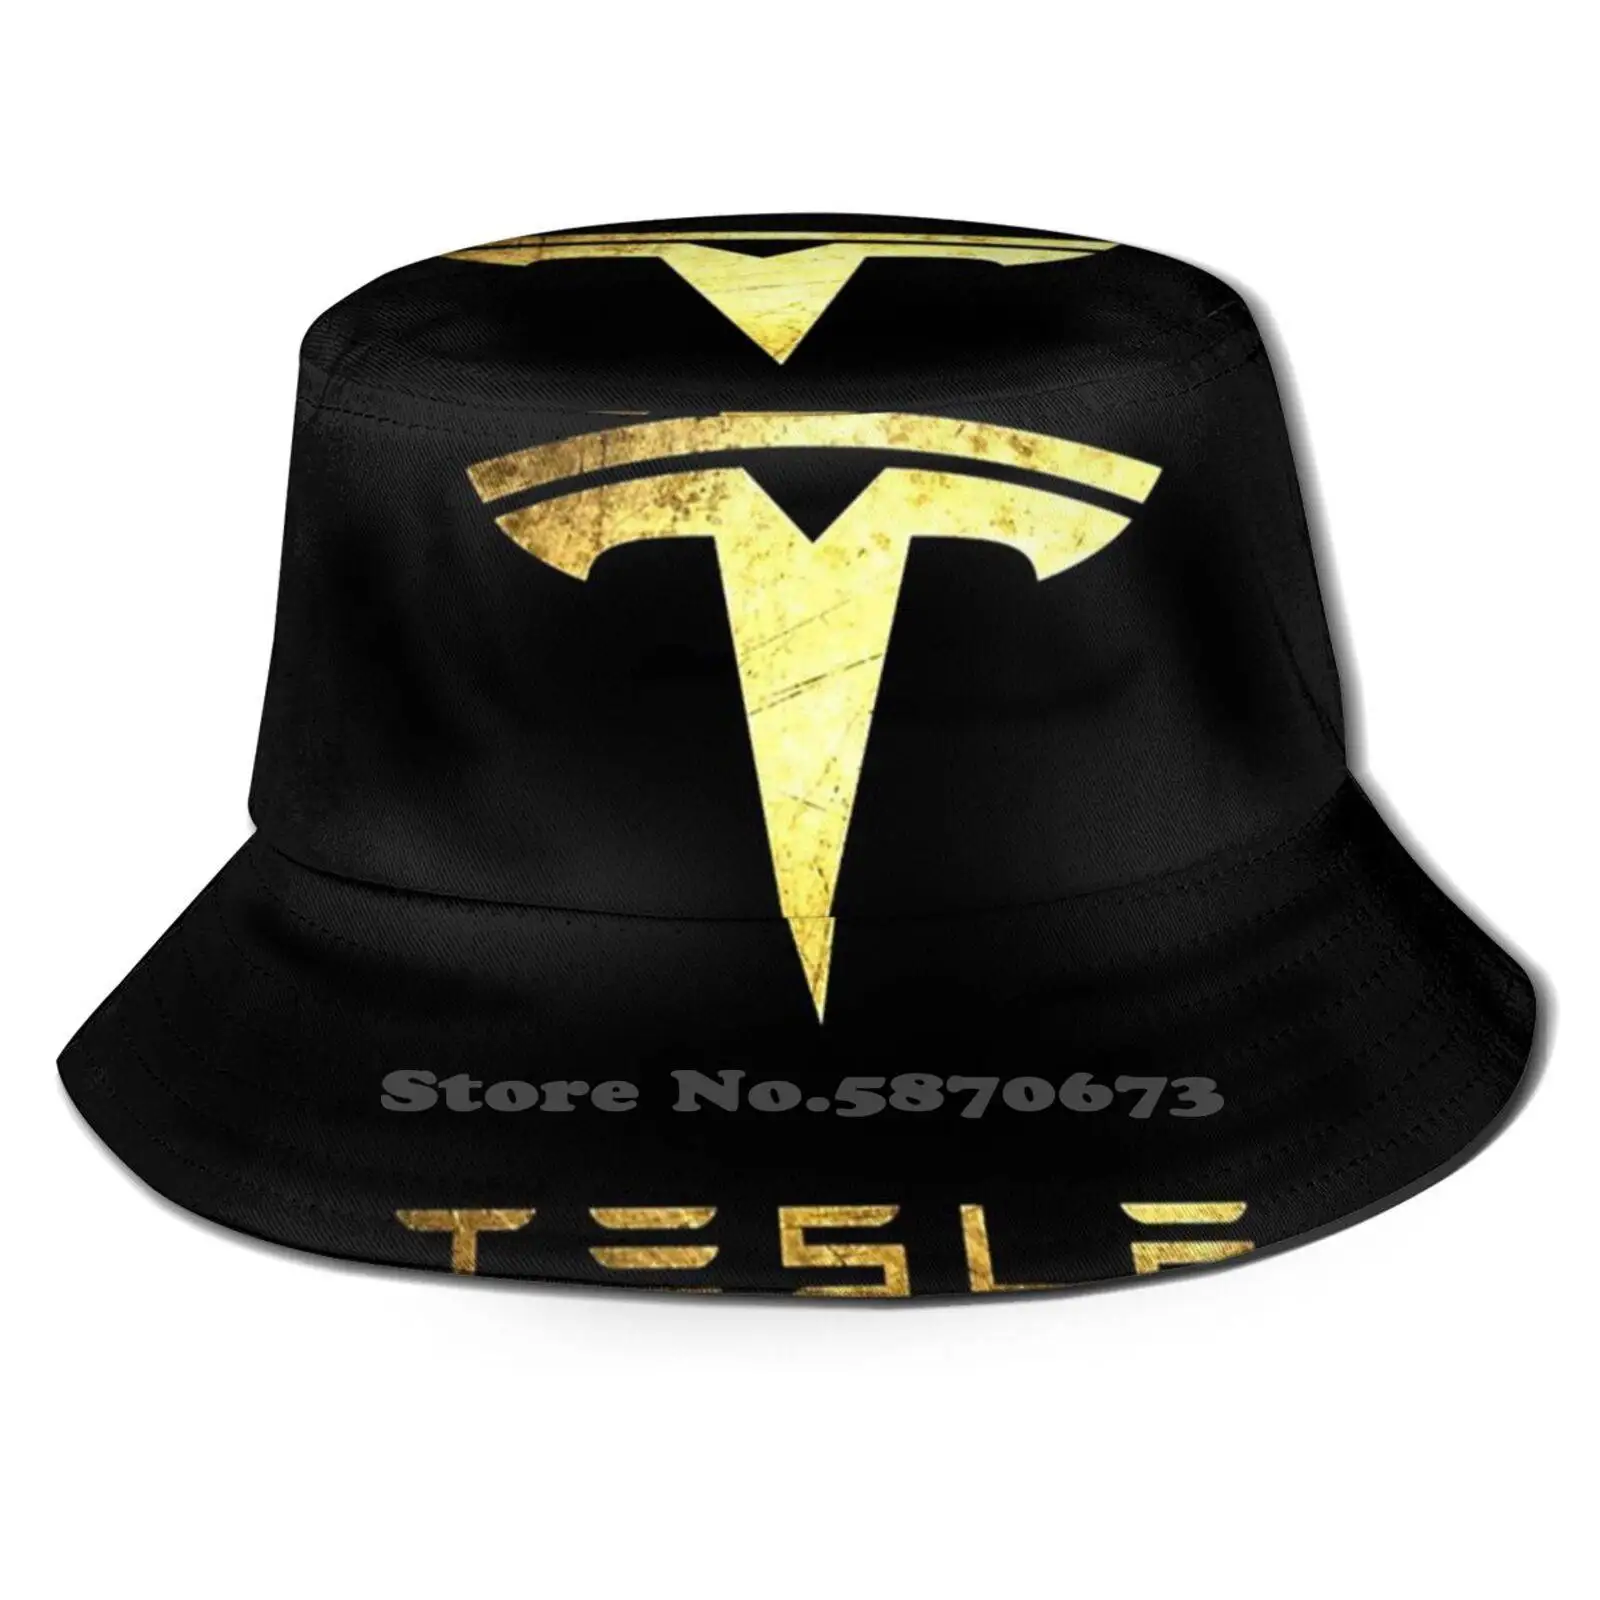 

Панама Tesla для мужчин и женщин, воздухопроницаемая шляпа унисекс, с рисунком Арона мускусного дерева, для электромобилей, моделей Spacex Science Nikola Tesla Roadster